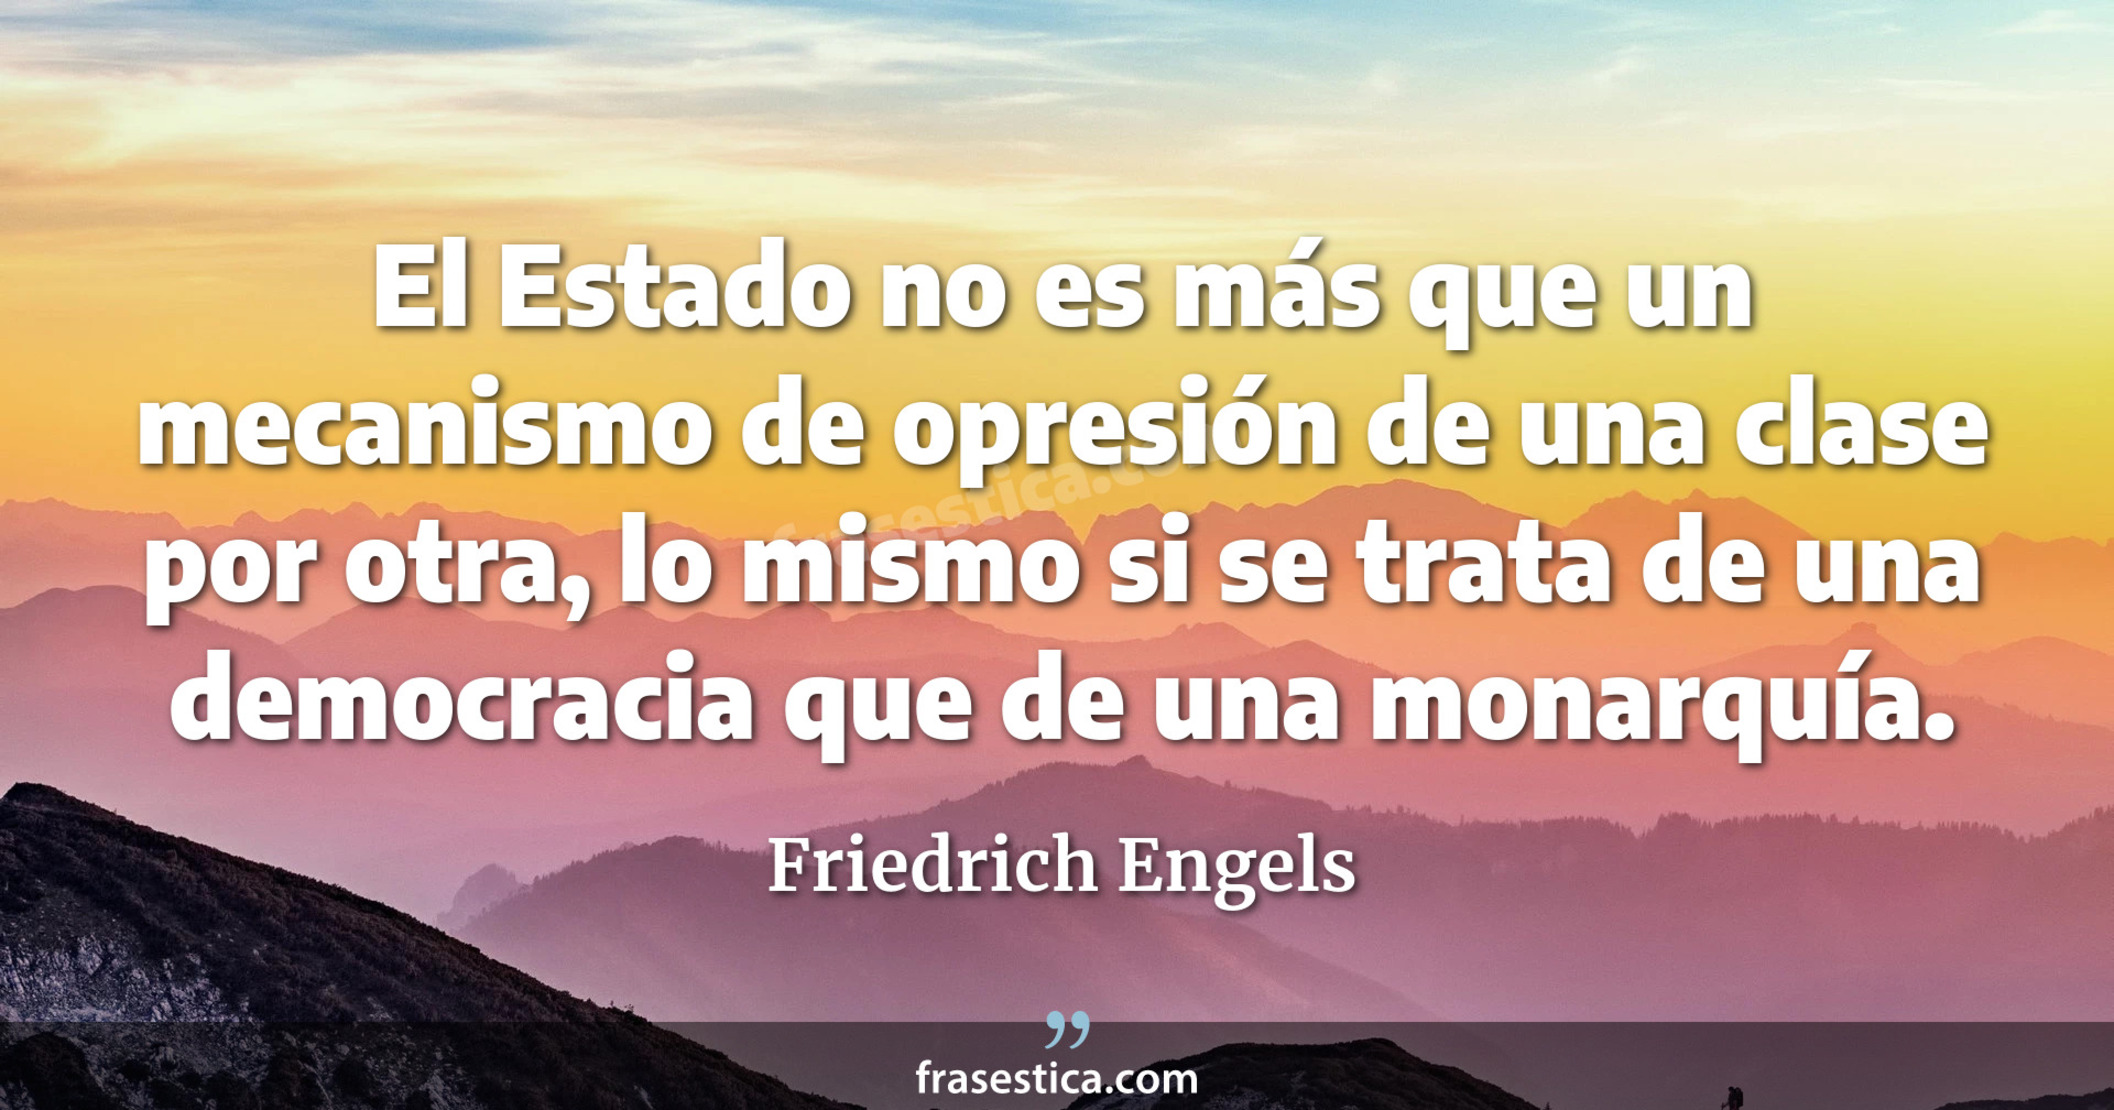 El Estado no es más que un mecanismo de opresión de una clase por otra, lo mismo si se trata de una democracia que de una monarquía. - Friedrich Engels